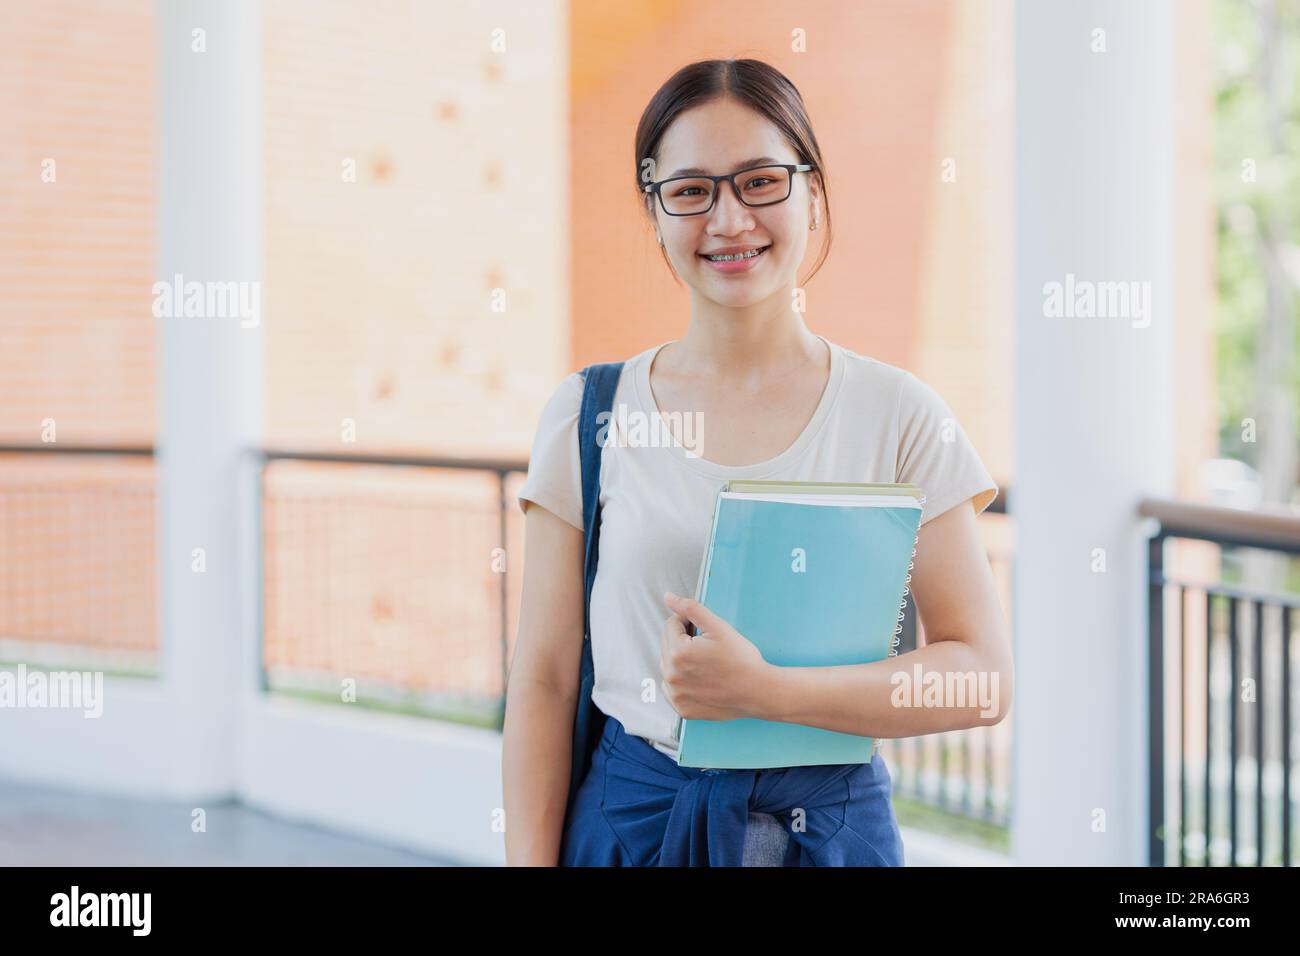 Ritratto adolescente asiatica sorriso felice nel campus universitario Godetevi l'istruzione persone. Foto Stock